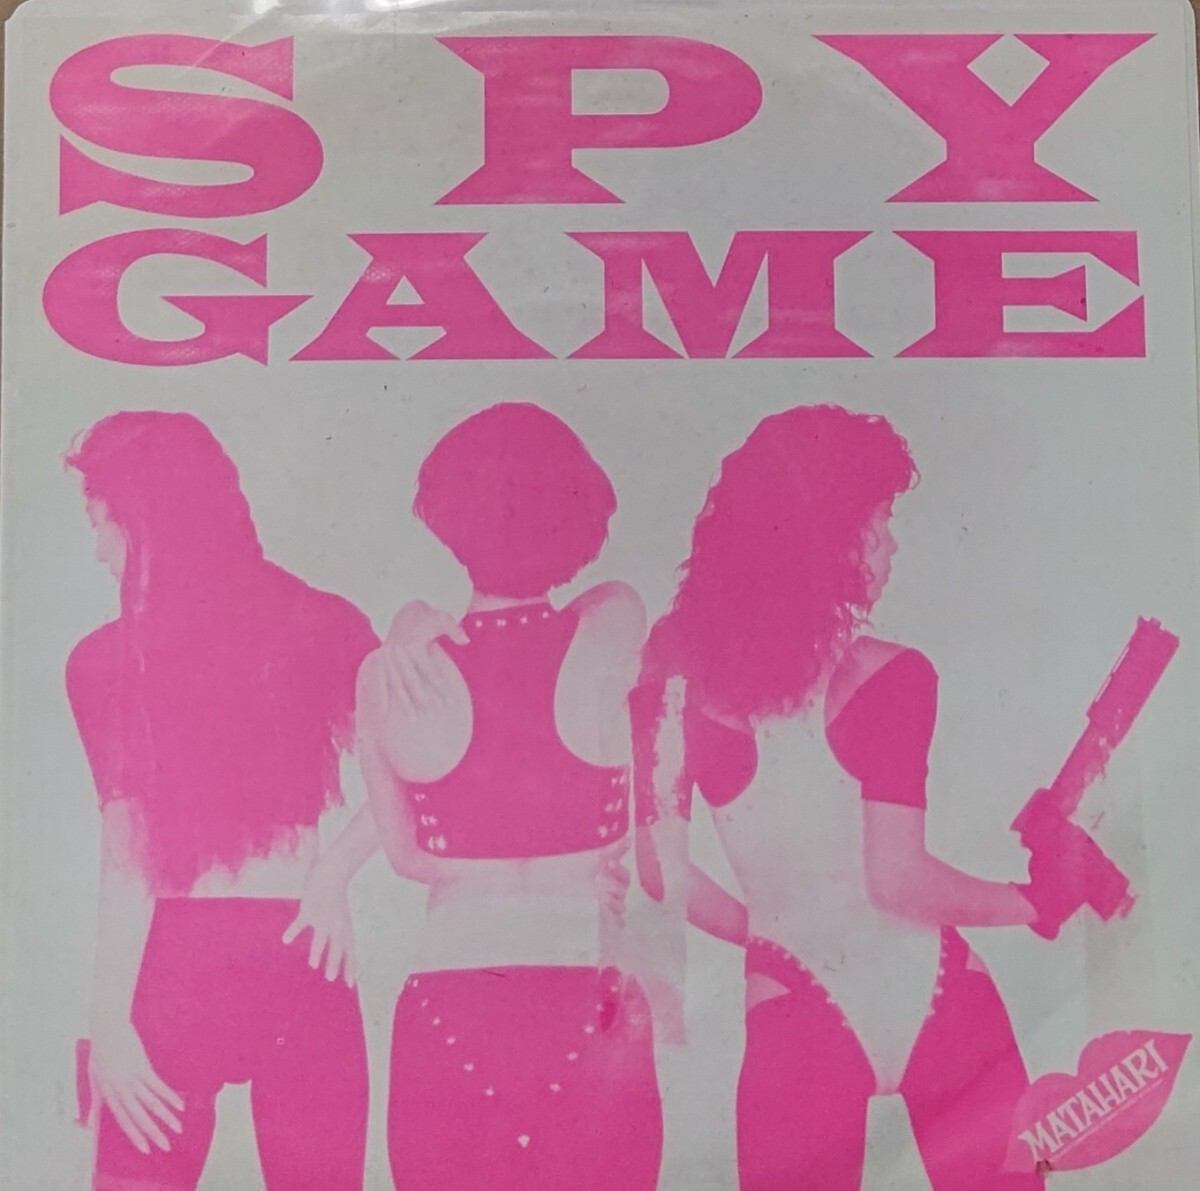  состояние хороший /7 дюймовый промо запись EP/MATAHARI mataha li/SPY GAME Spy игра /RED MONSTER MIX сбор 